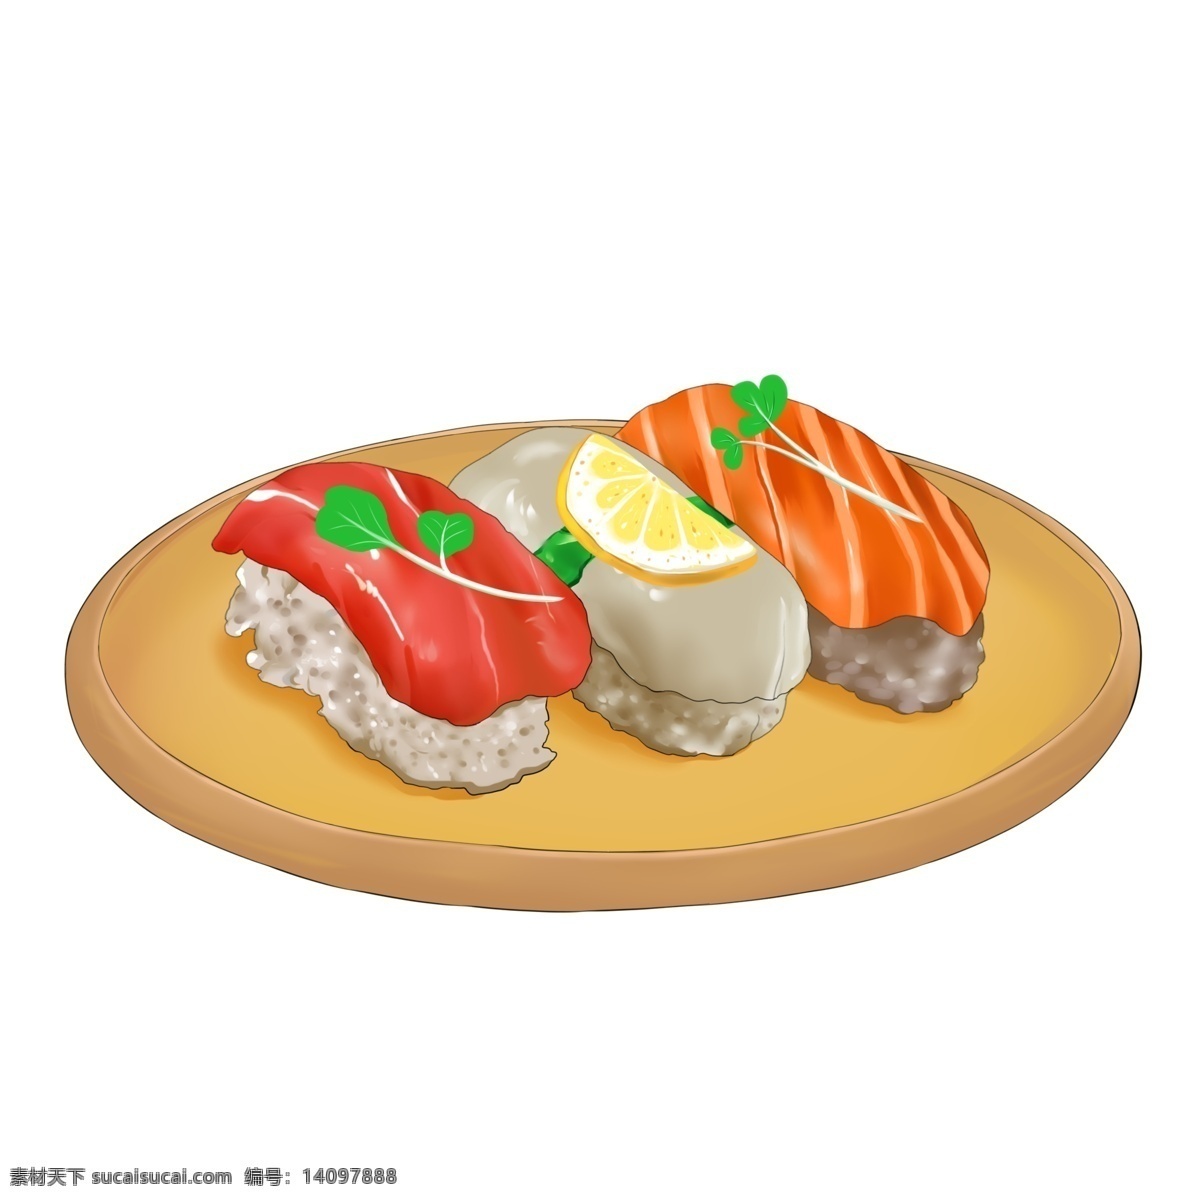 美味 的卡 通 寿司 插画 卡通寿司插画 食物 卡通食物插画 日本寿司 日式食物 美味的寿司 创意寿司插画